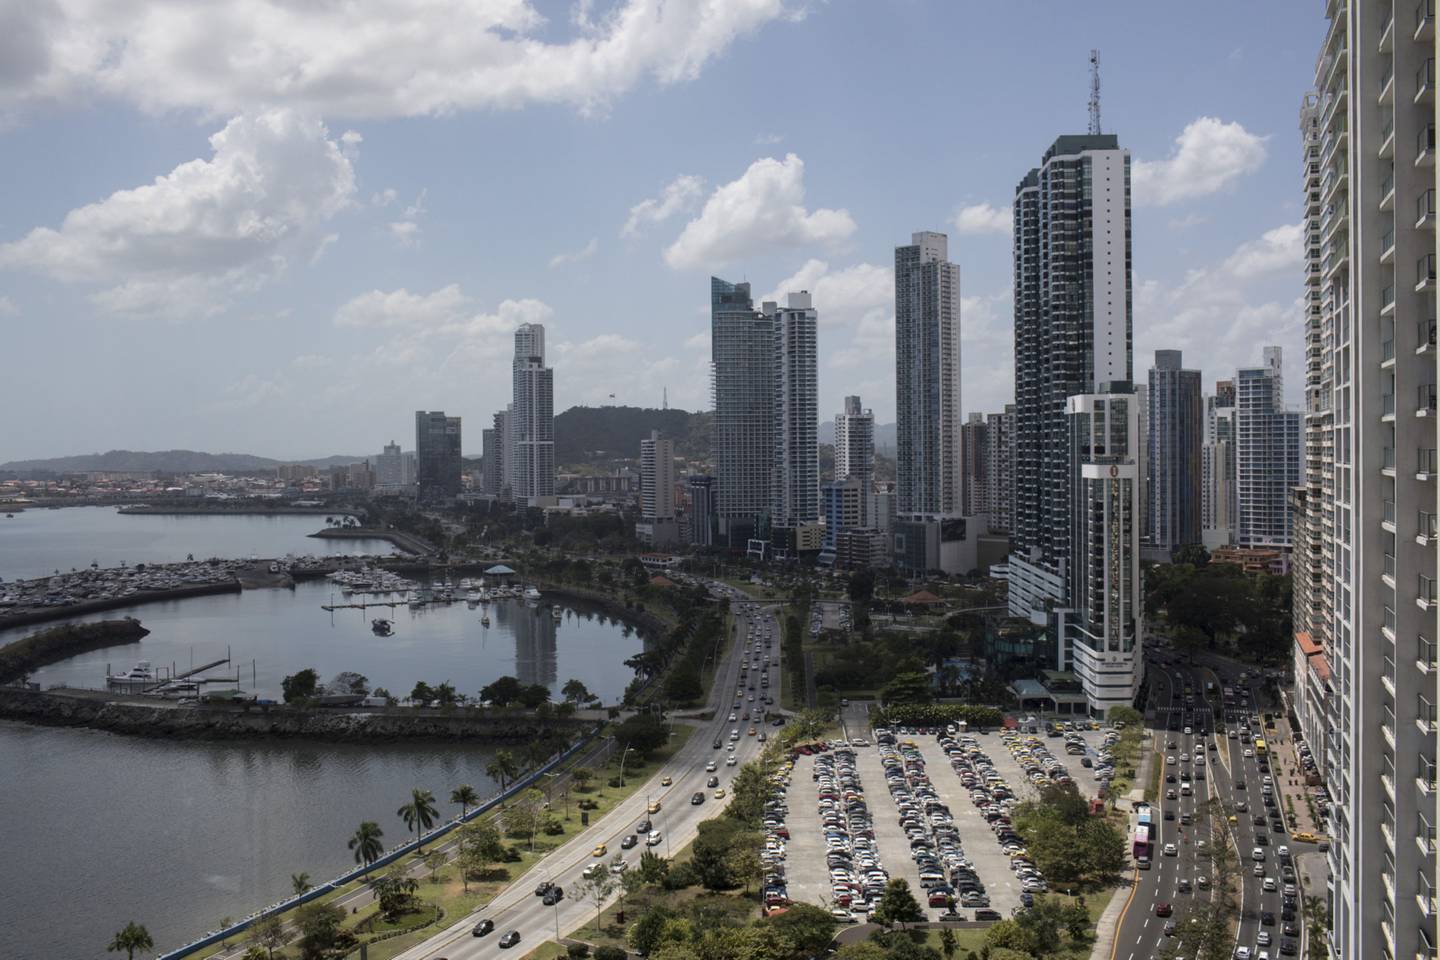 La crisis económica provocada por la aparición del Covid-19 impactó en el empleo en Panamá, cuya población económicamente activa se situó en 2,003,258 personas.